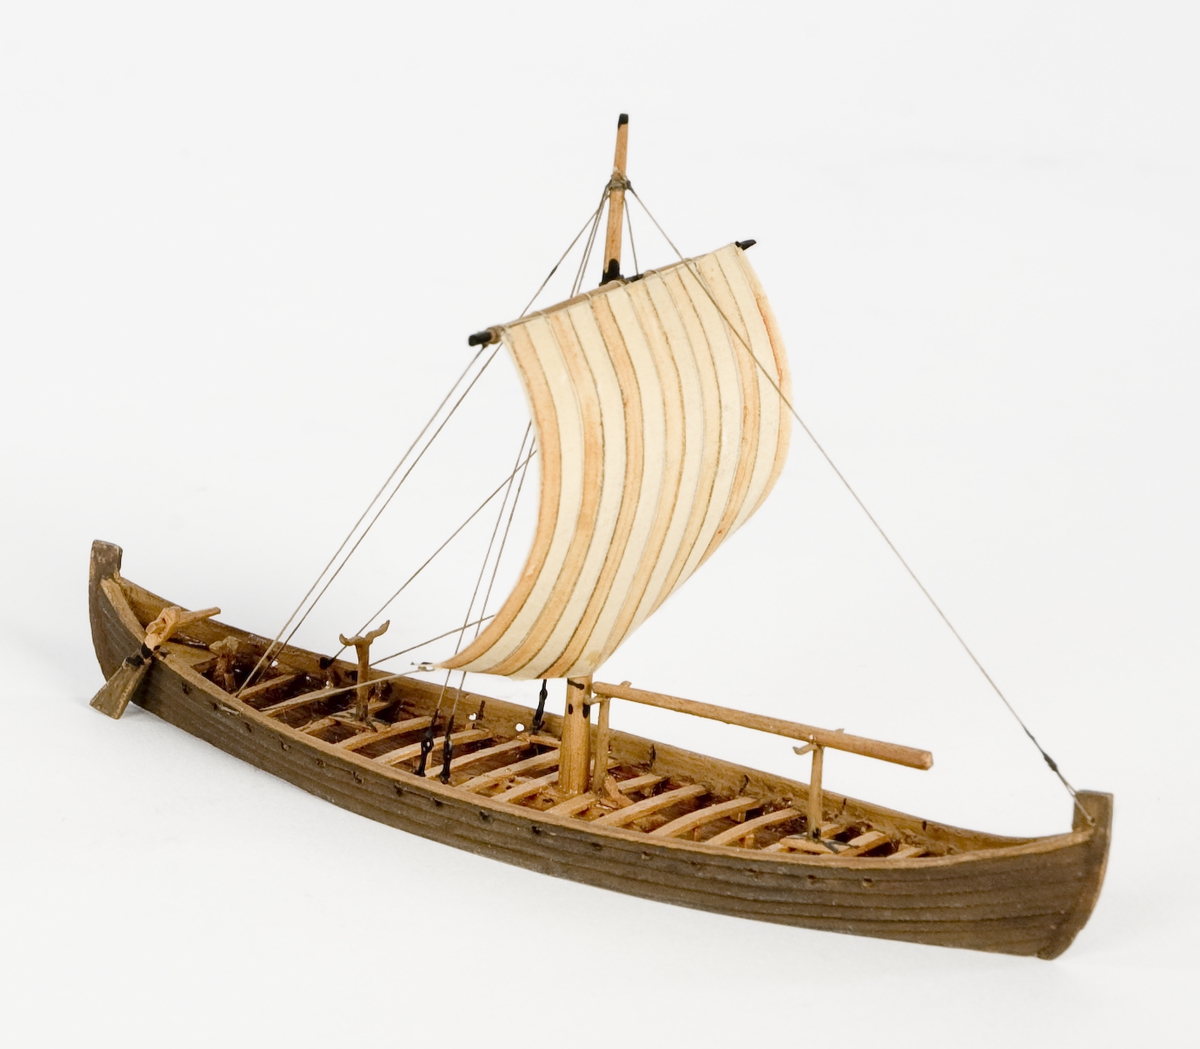 Fartygsmodell av trä. Vikingaskepp på vattenlinje. Sexton roddbänkar, styråra på styrbords sida. Riggad med en mast och ett röd-och vitrandigt segel av papper. Tältspira upplagd på bockar för om masten. Mörkbrun färg.
Skala 1:200Föremålets form: Vattenlinjemodell